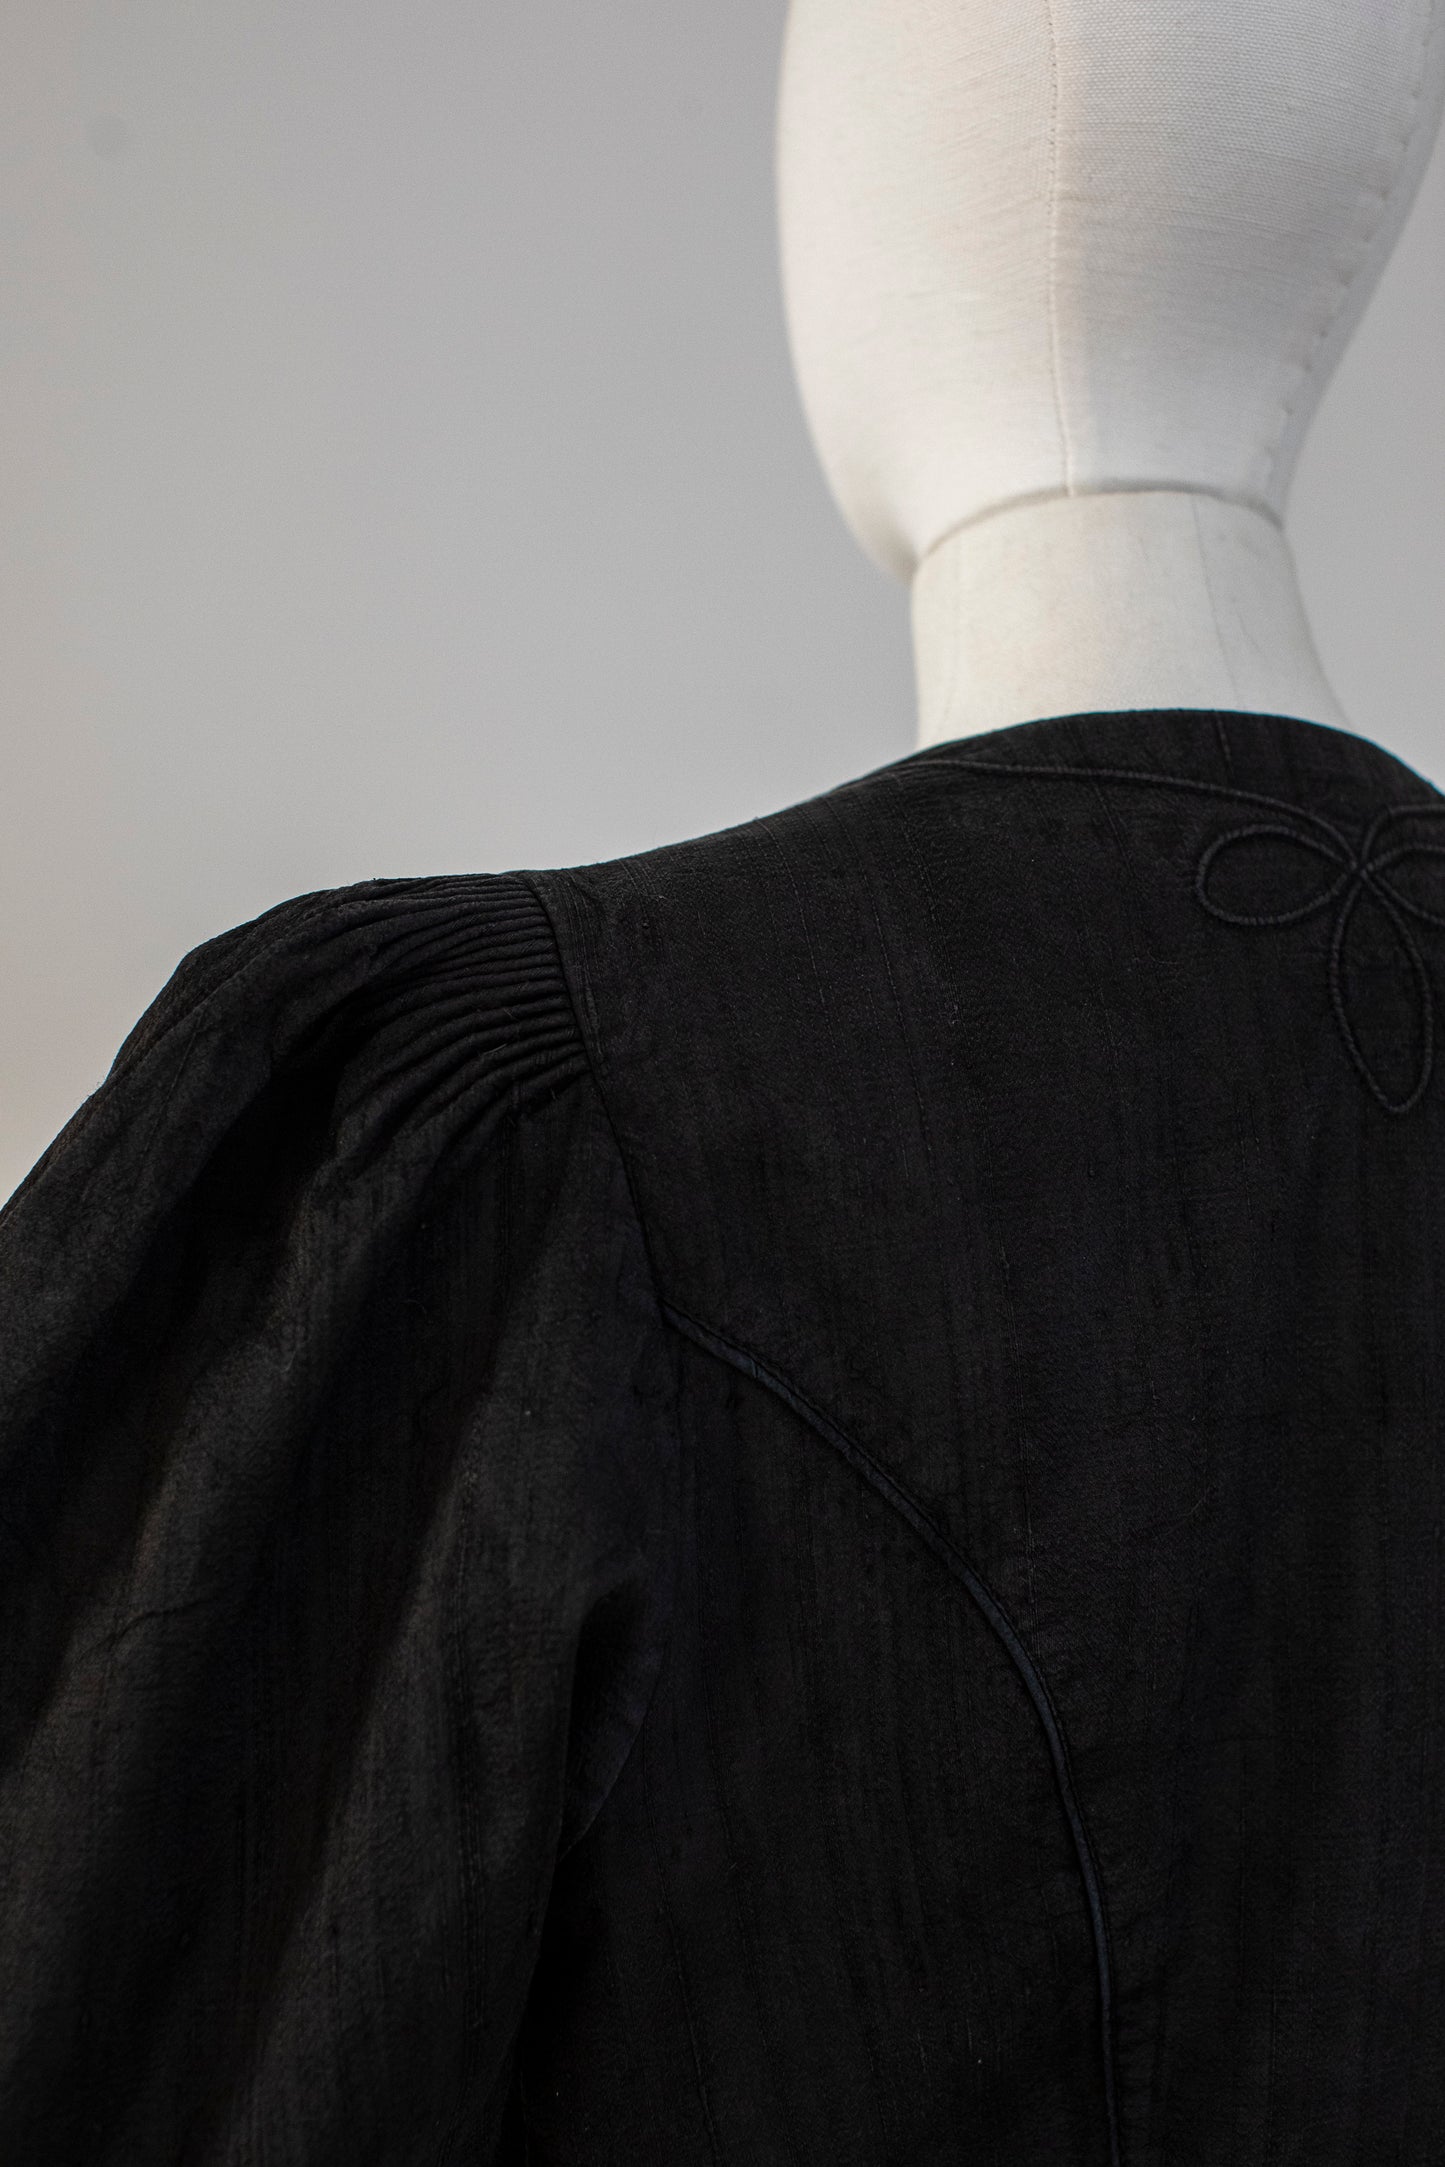 Vintage Austrian Black Wild Silk Blazer by Sportalm Size XS-S